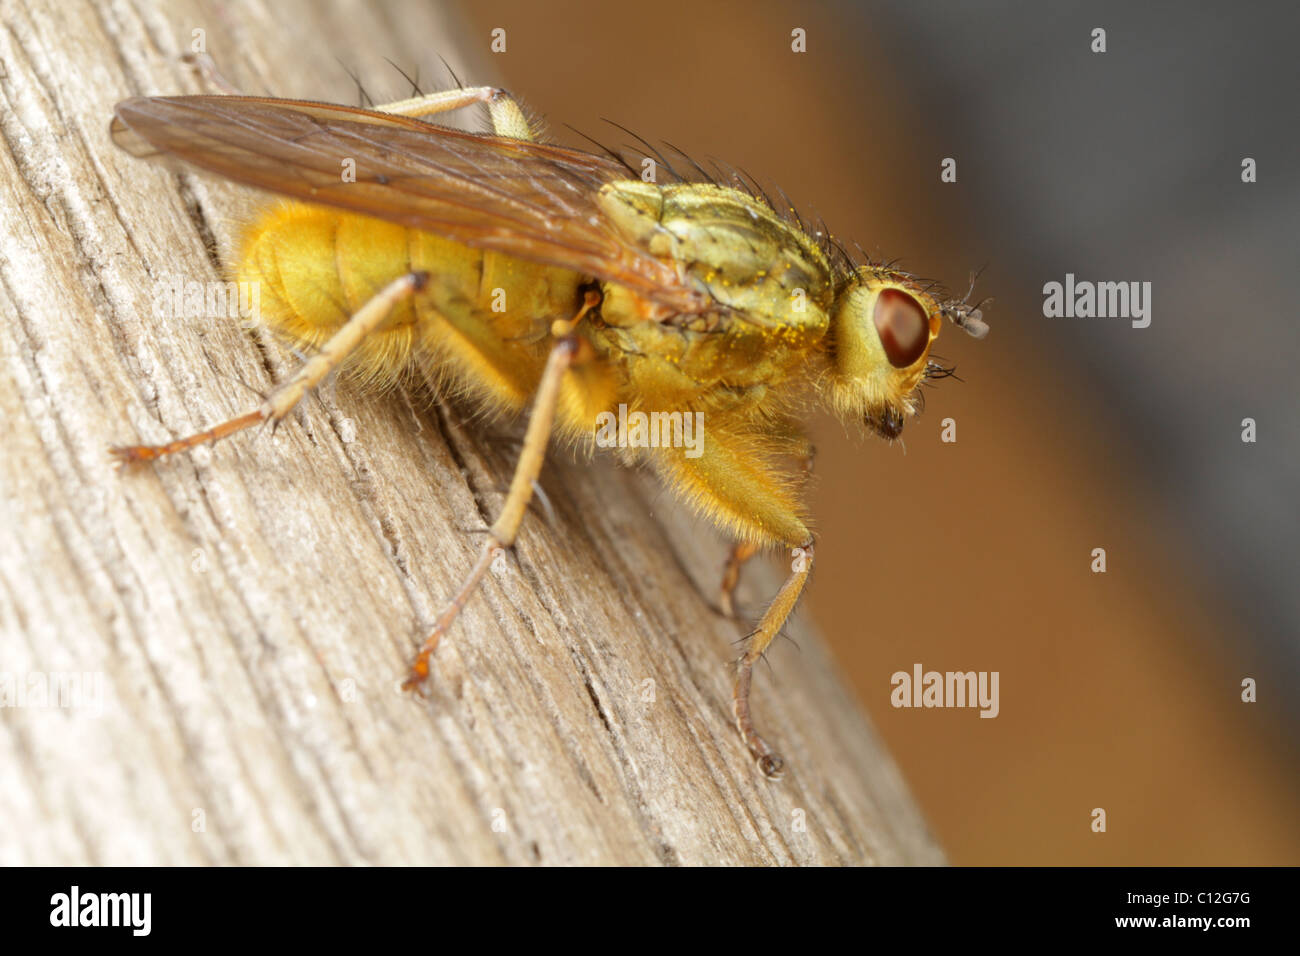 Golden dung fly, Scathophaga stercoraria. Stock Photo